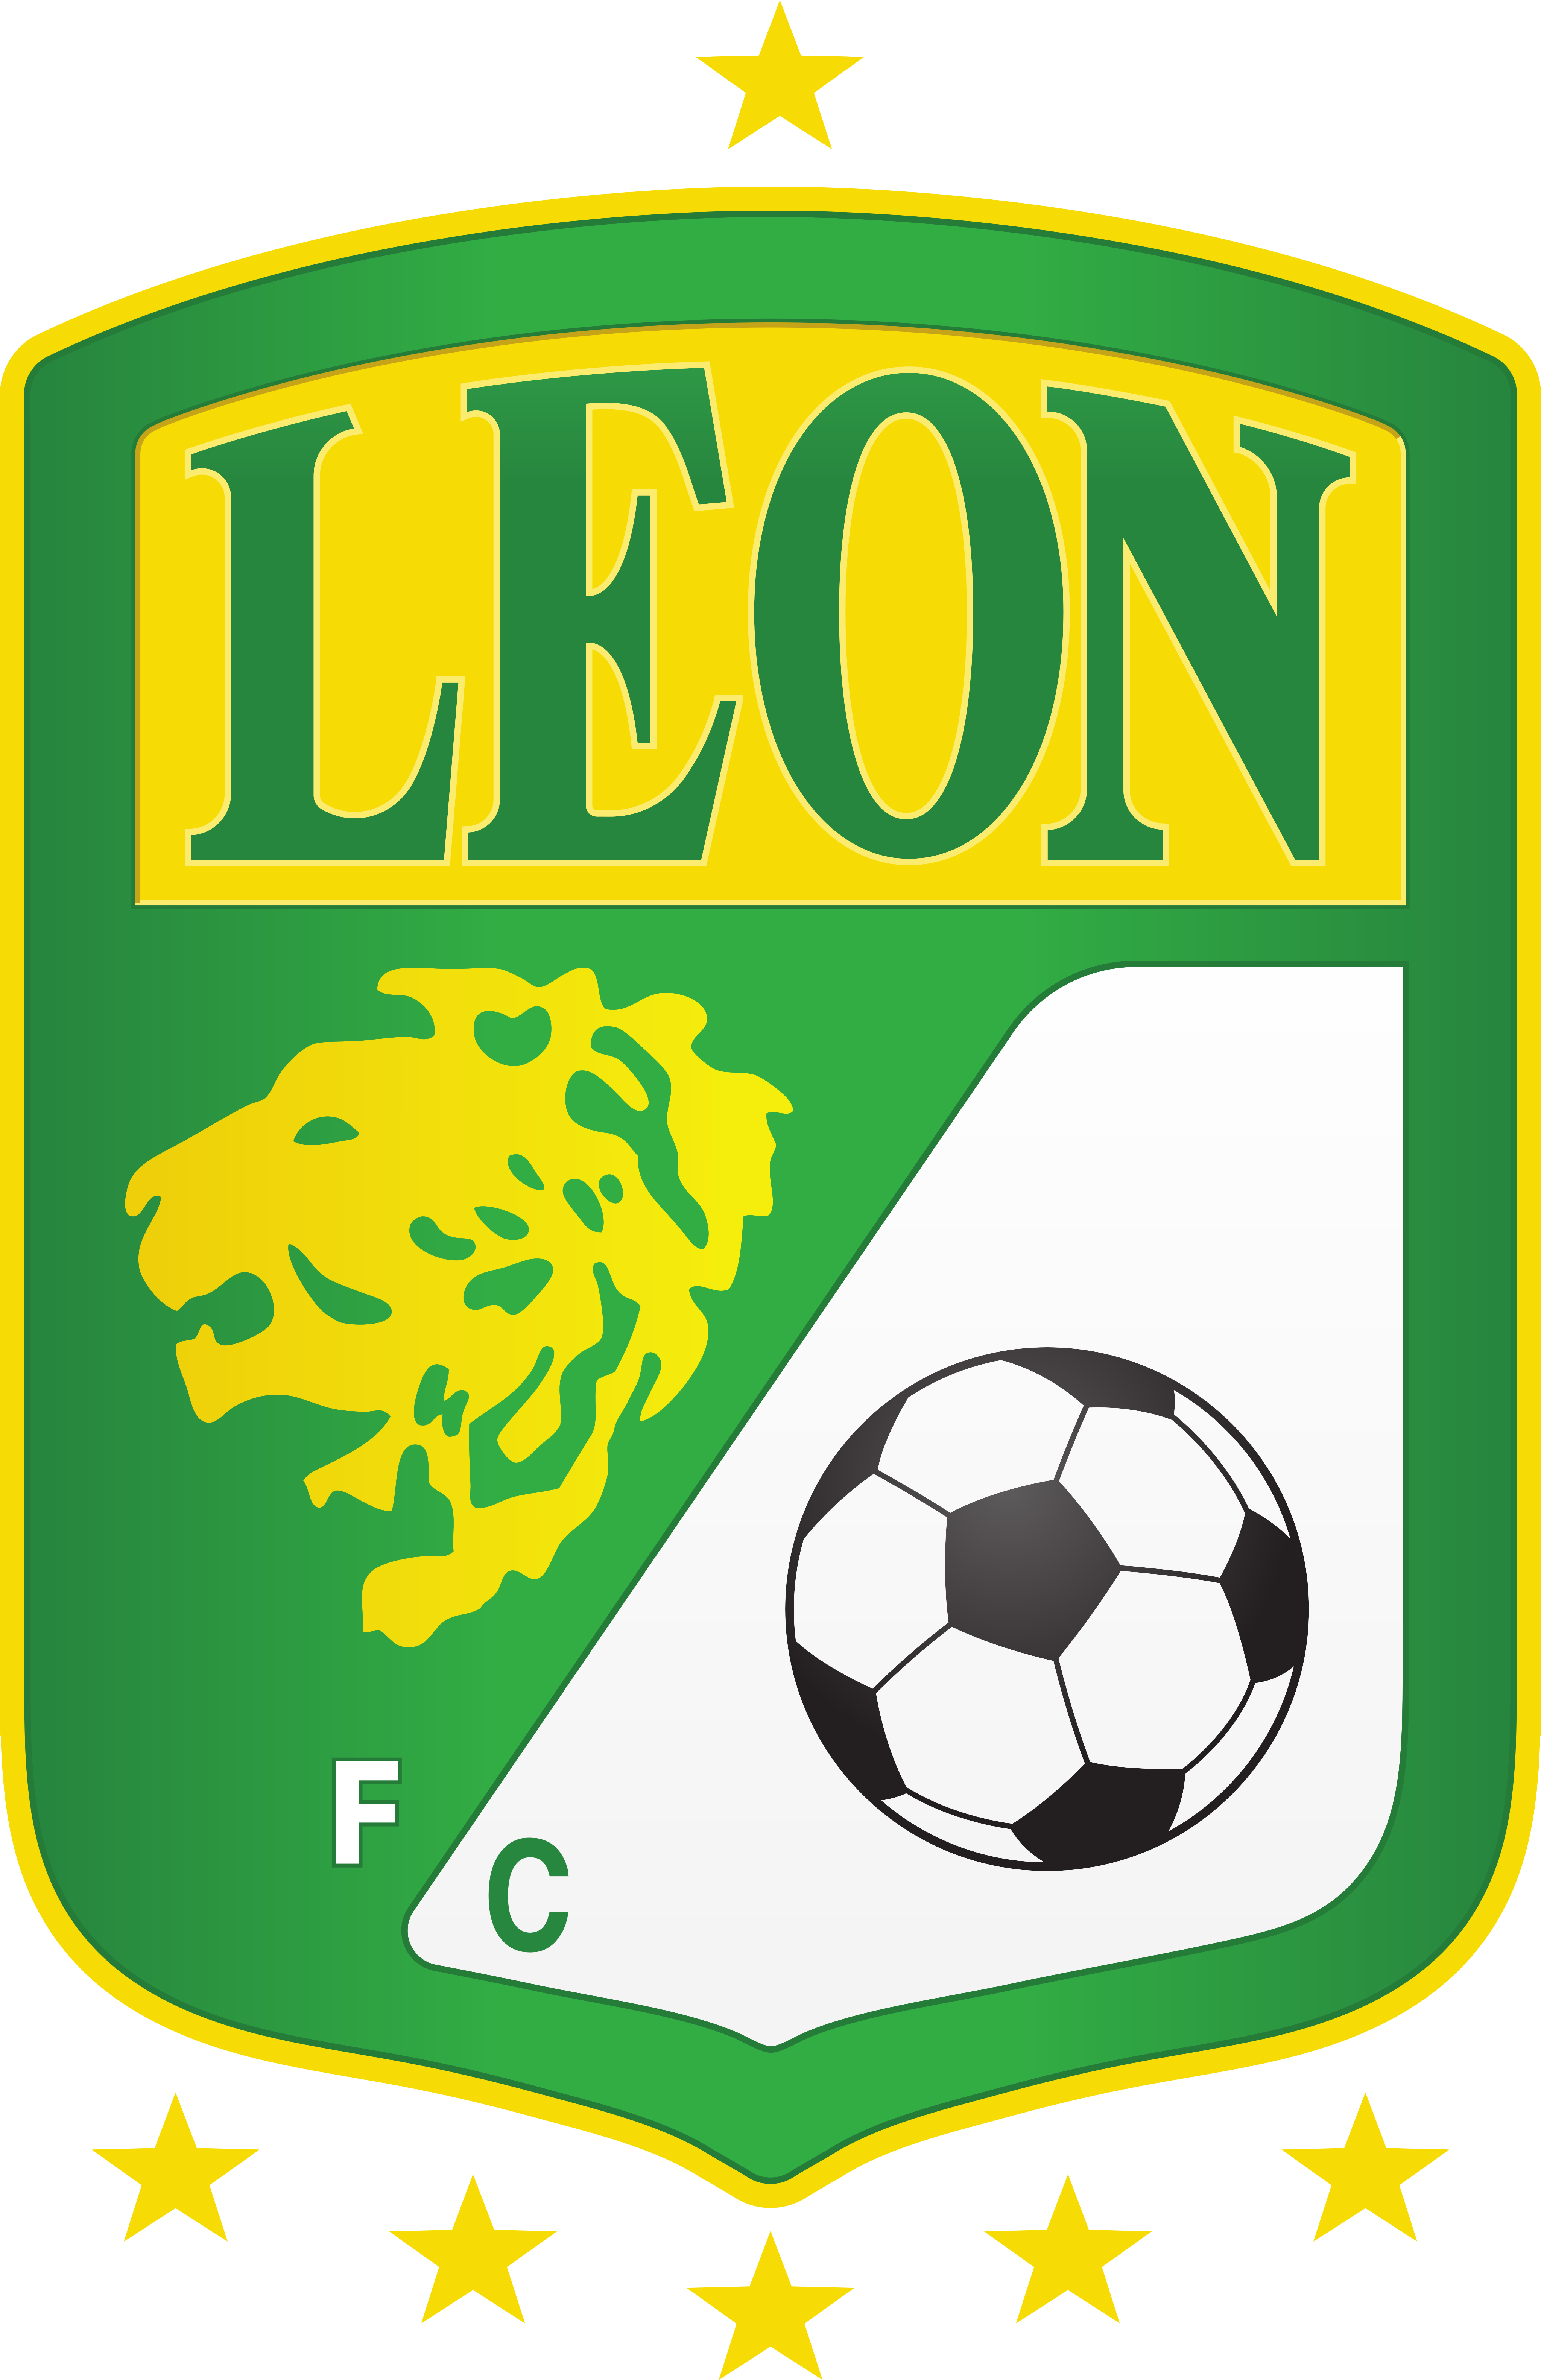 club leon logo - Club León Logo - Escudo